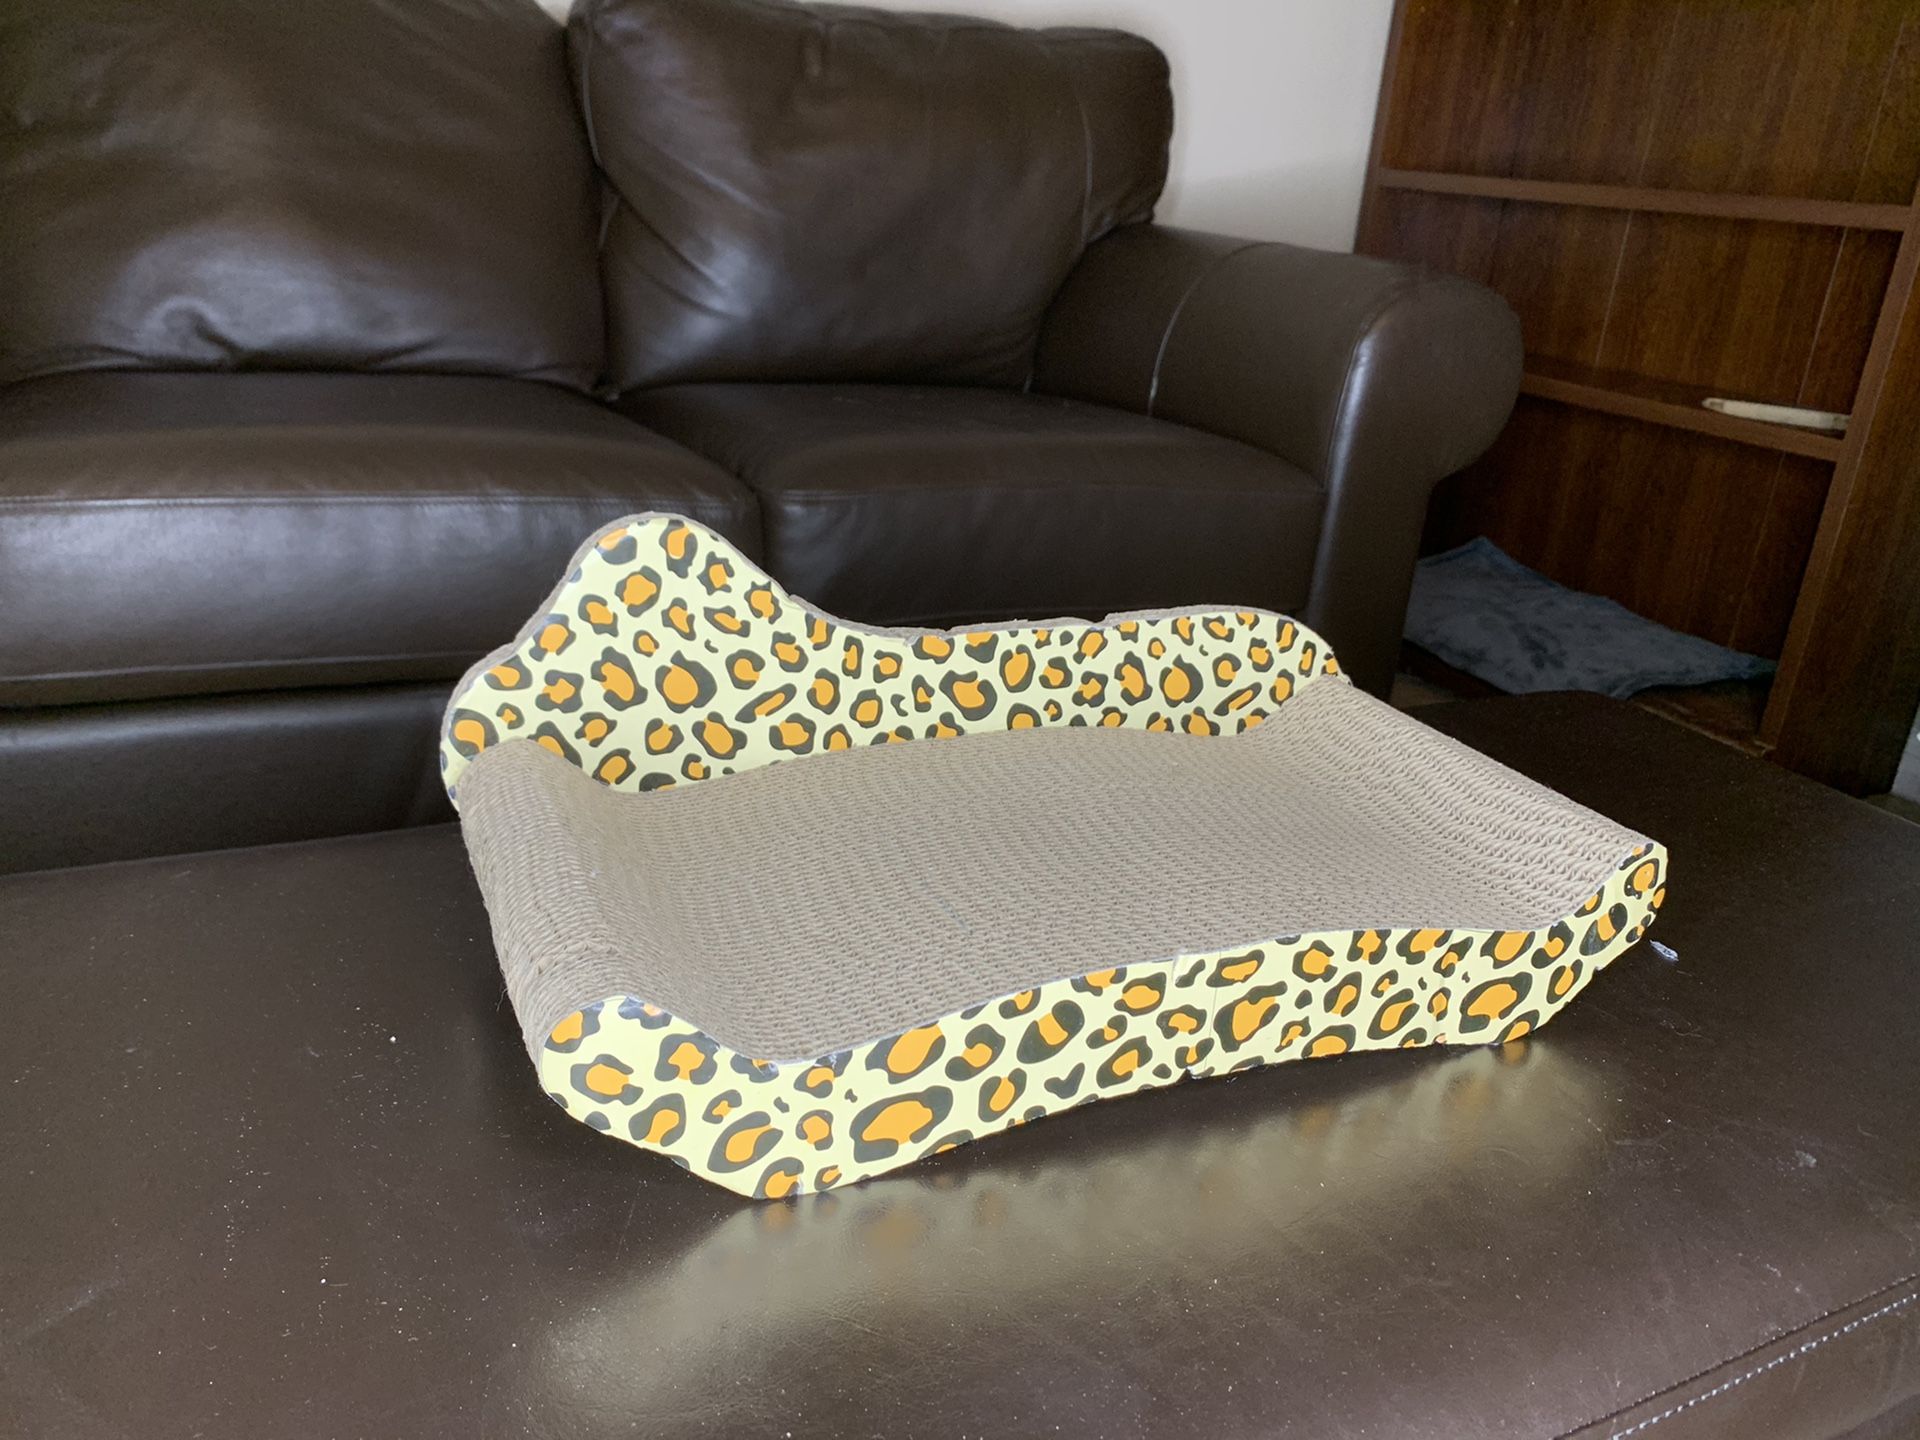 Leopard print cat scratch board/ cat bed